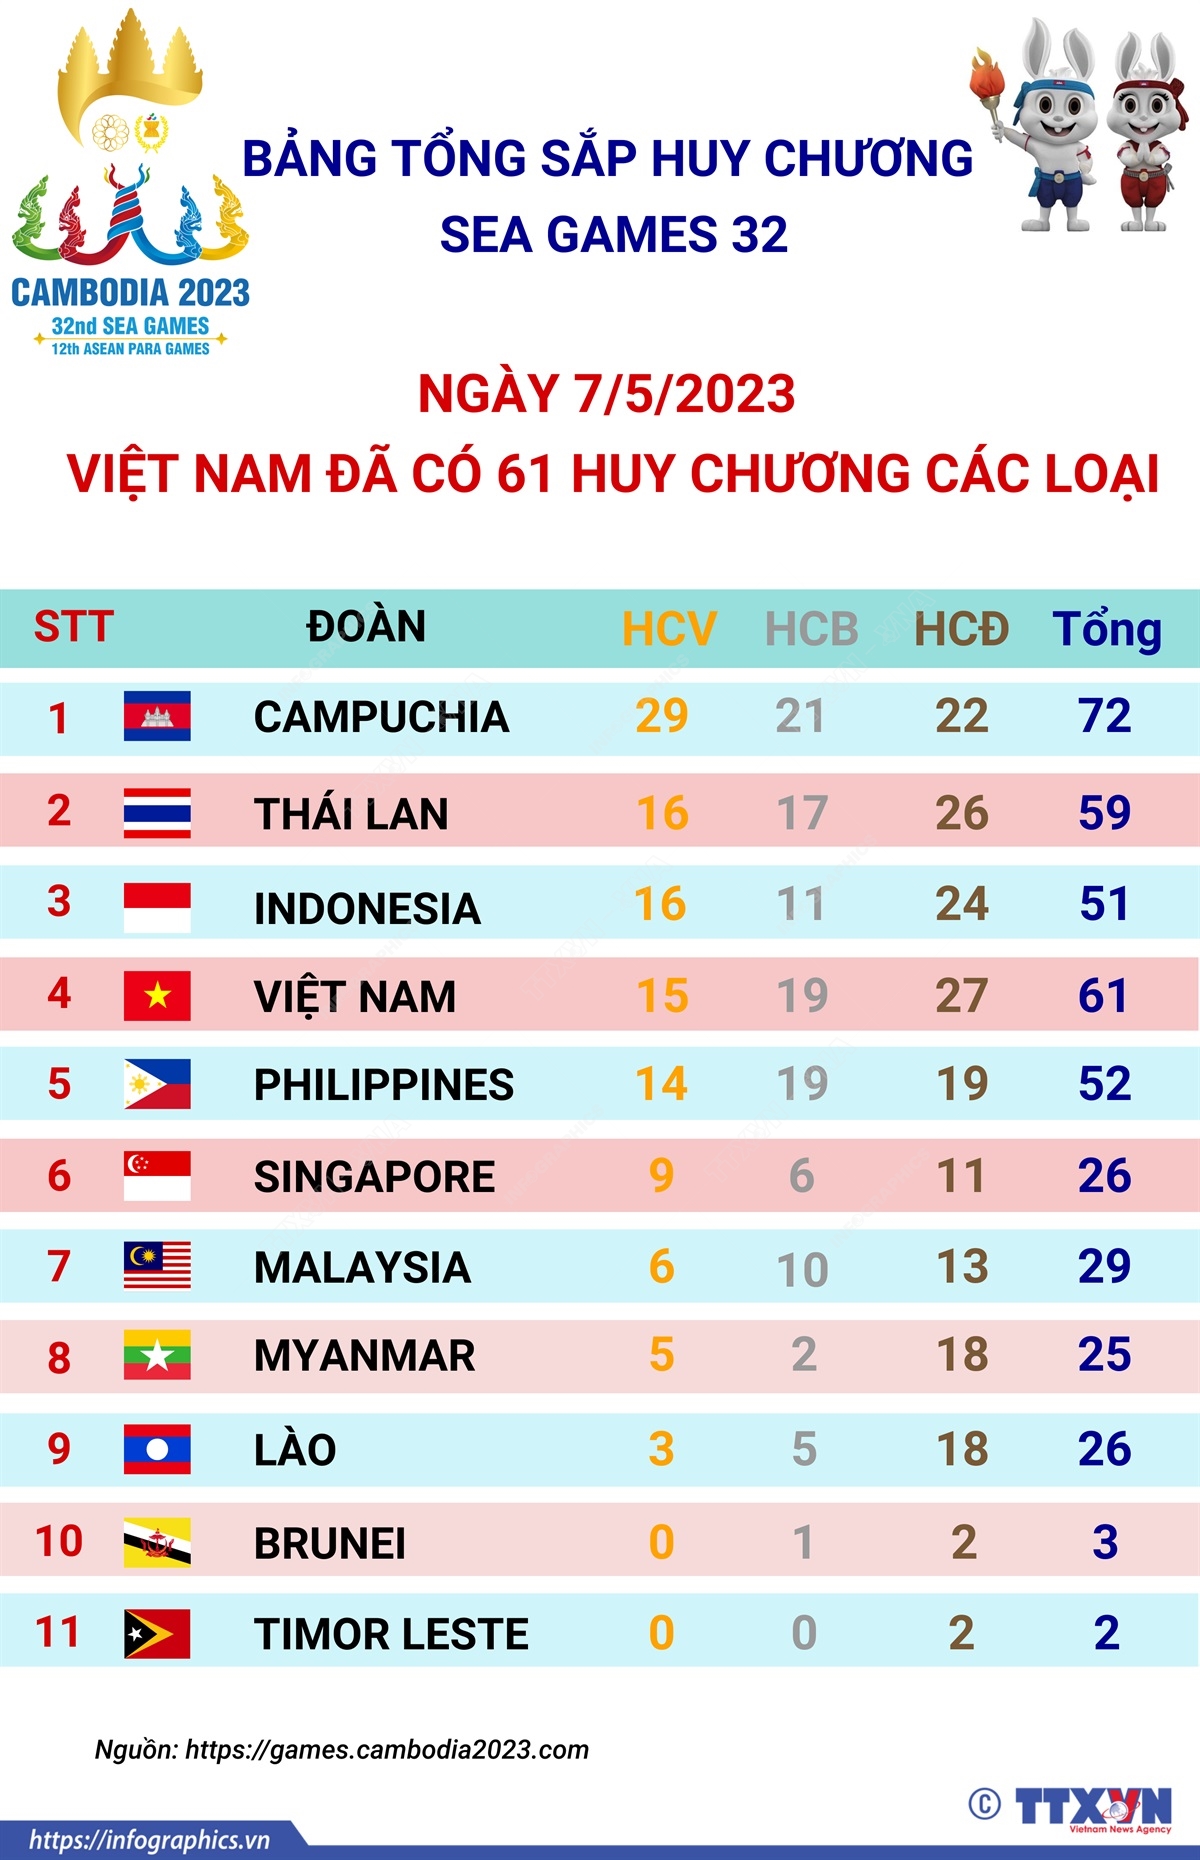 Bảng tổng sắp huy chương SEA Games 32 ngày 7/5: Việt Nam đã có 61 huy chương các loại